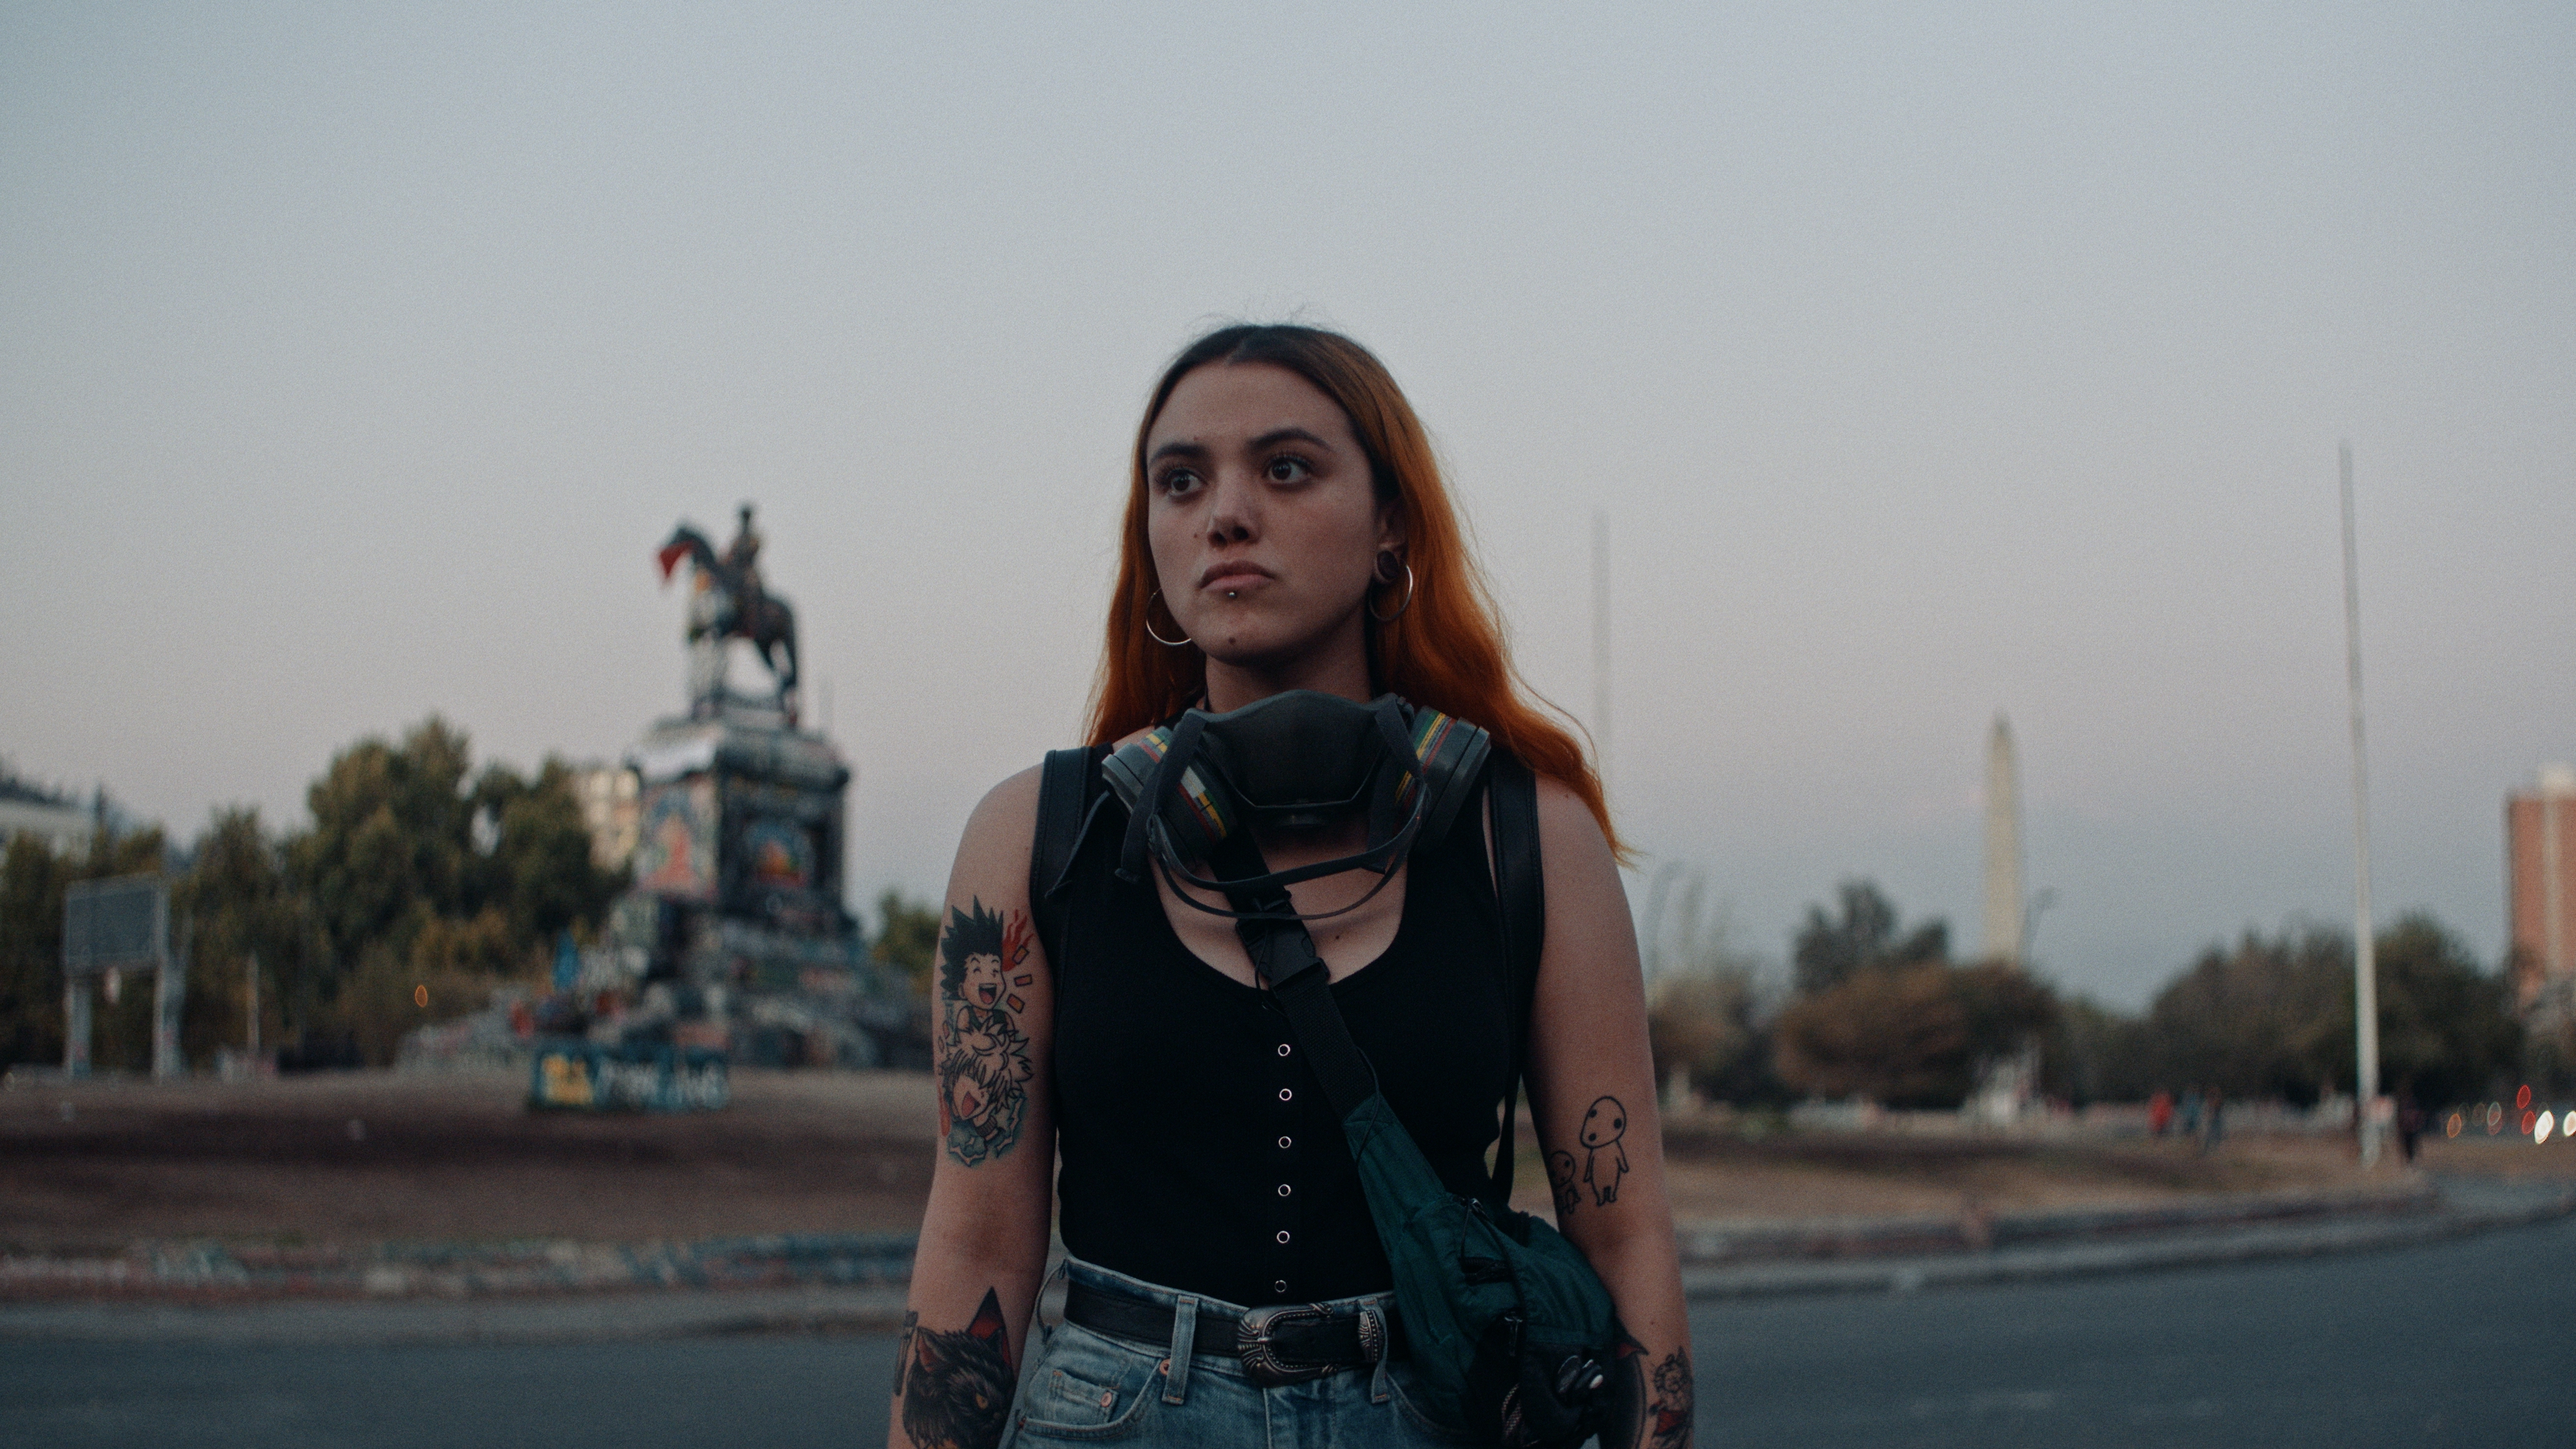 Offizielles Bildmaterial des Films Dear Future Children. Auf dem Bild ist eine junge Frau zu sehen, die auf einer Straße steht. Sie hat Tattoos auf beiden Armen, und eine Gasmaske um ihren Hals. 